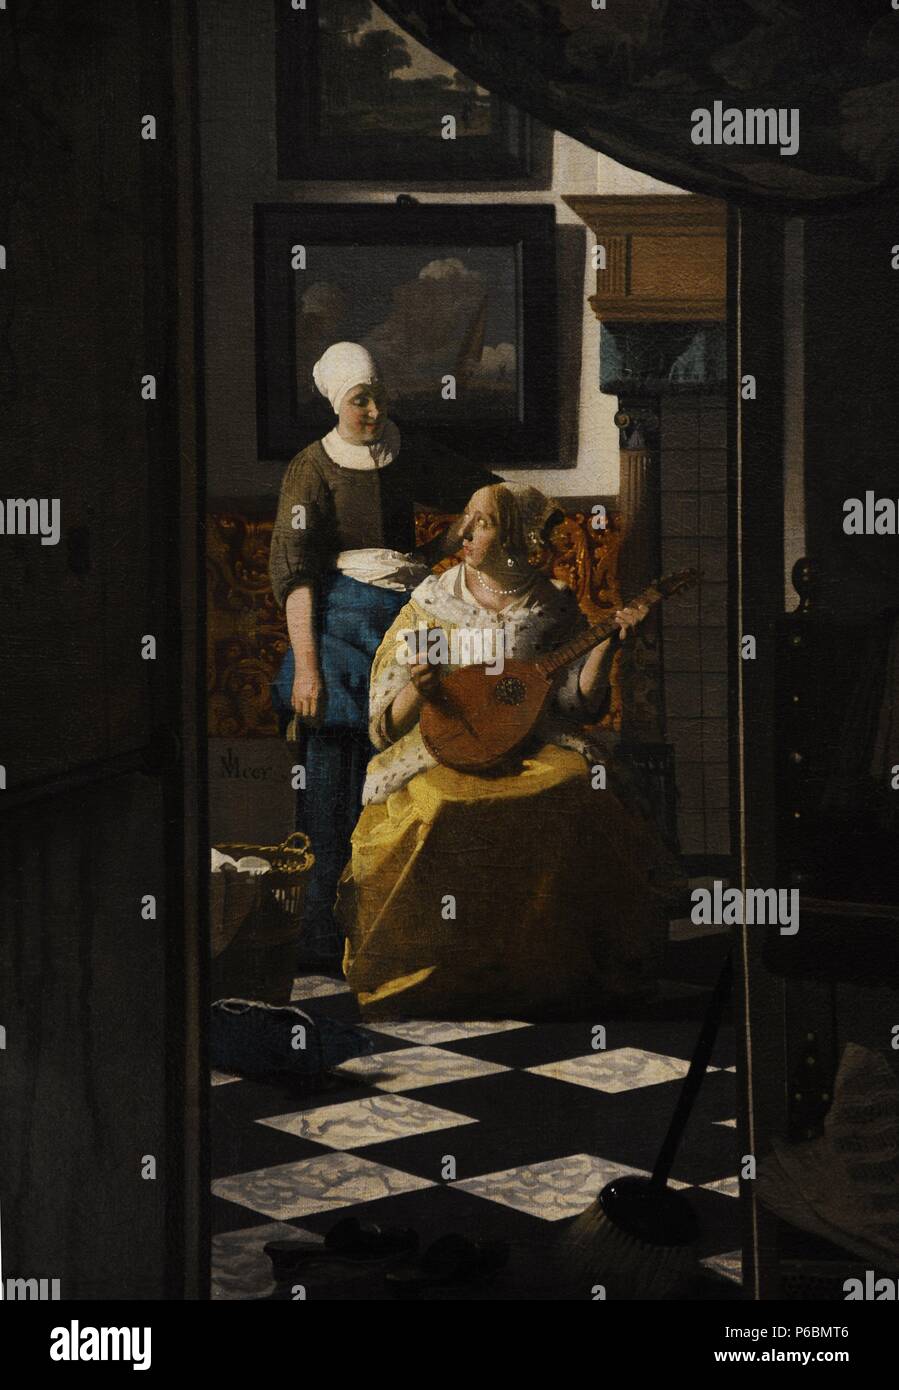 Johannes Vermeer (1632-1675). Peintre hollandais. La lettre d'amour, ch. 1669-1670. Rijskmuseum. Amsterdam. Aux Pays-Bas. Banque D'Images